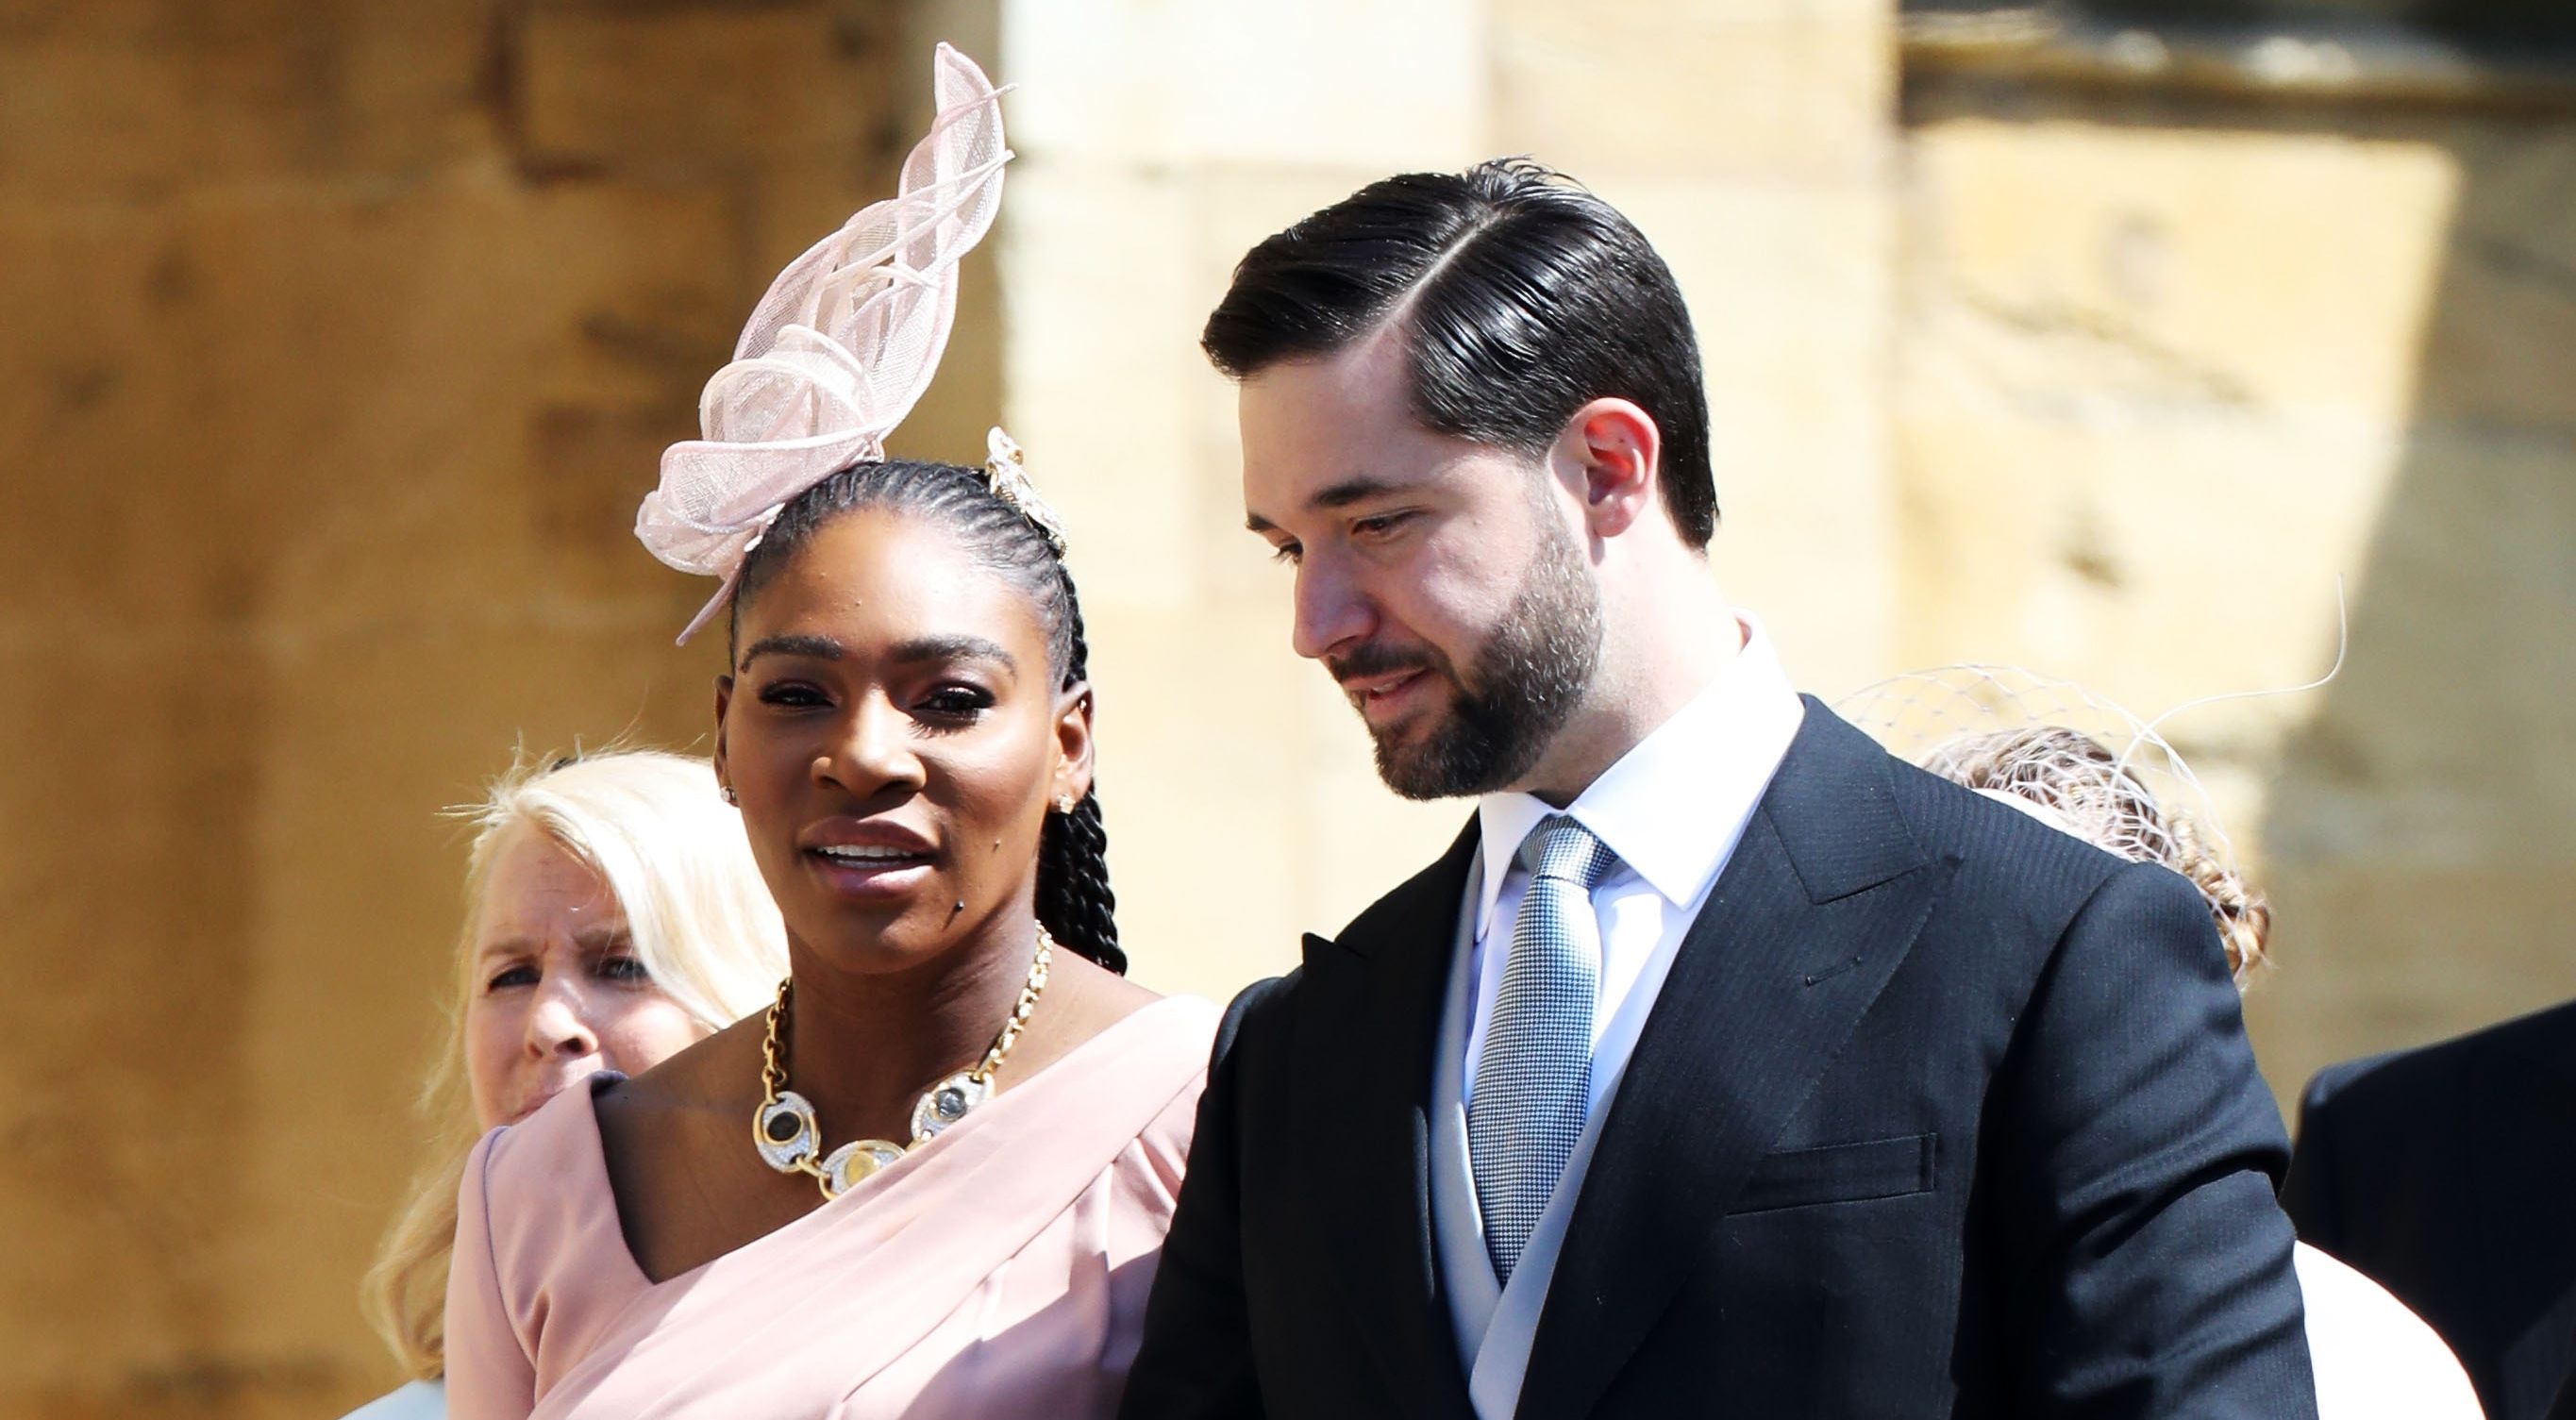 Hjælp Decimal med tiden Serena Williams: I wore sneakers under royal wedding outfit | Independent.ie